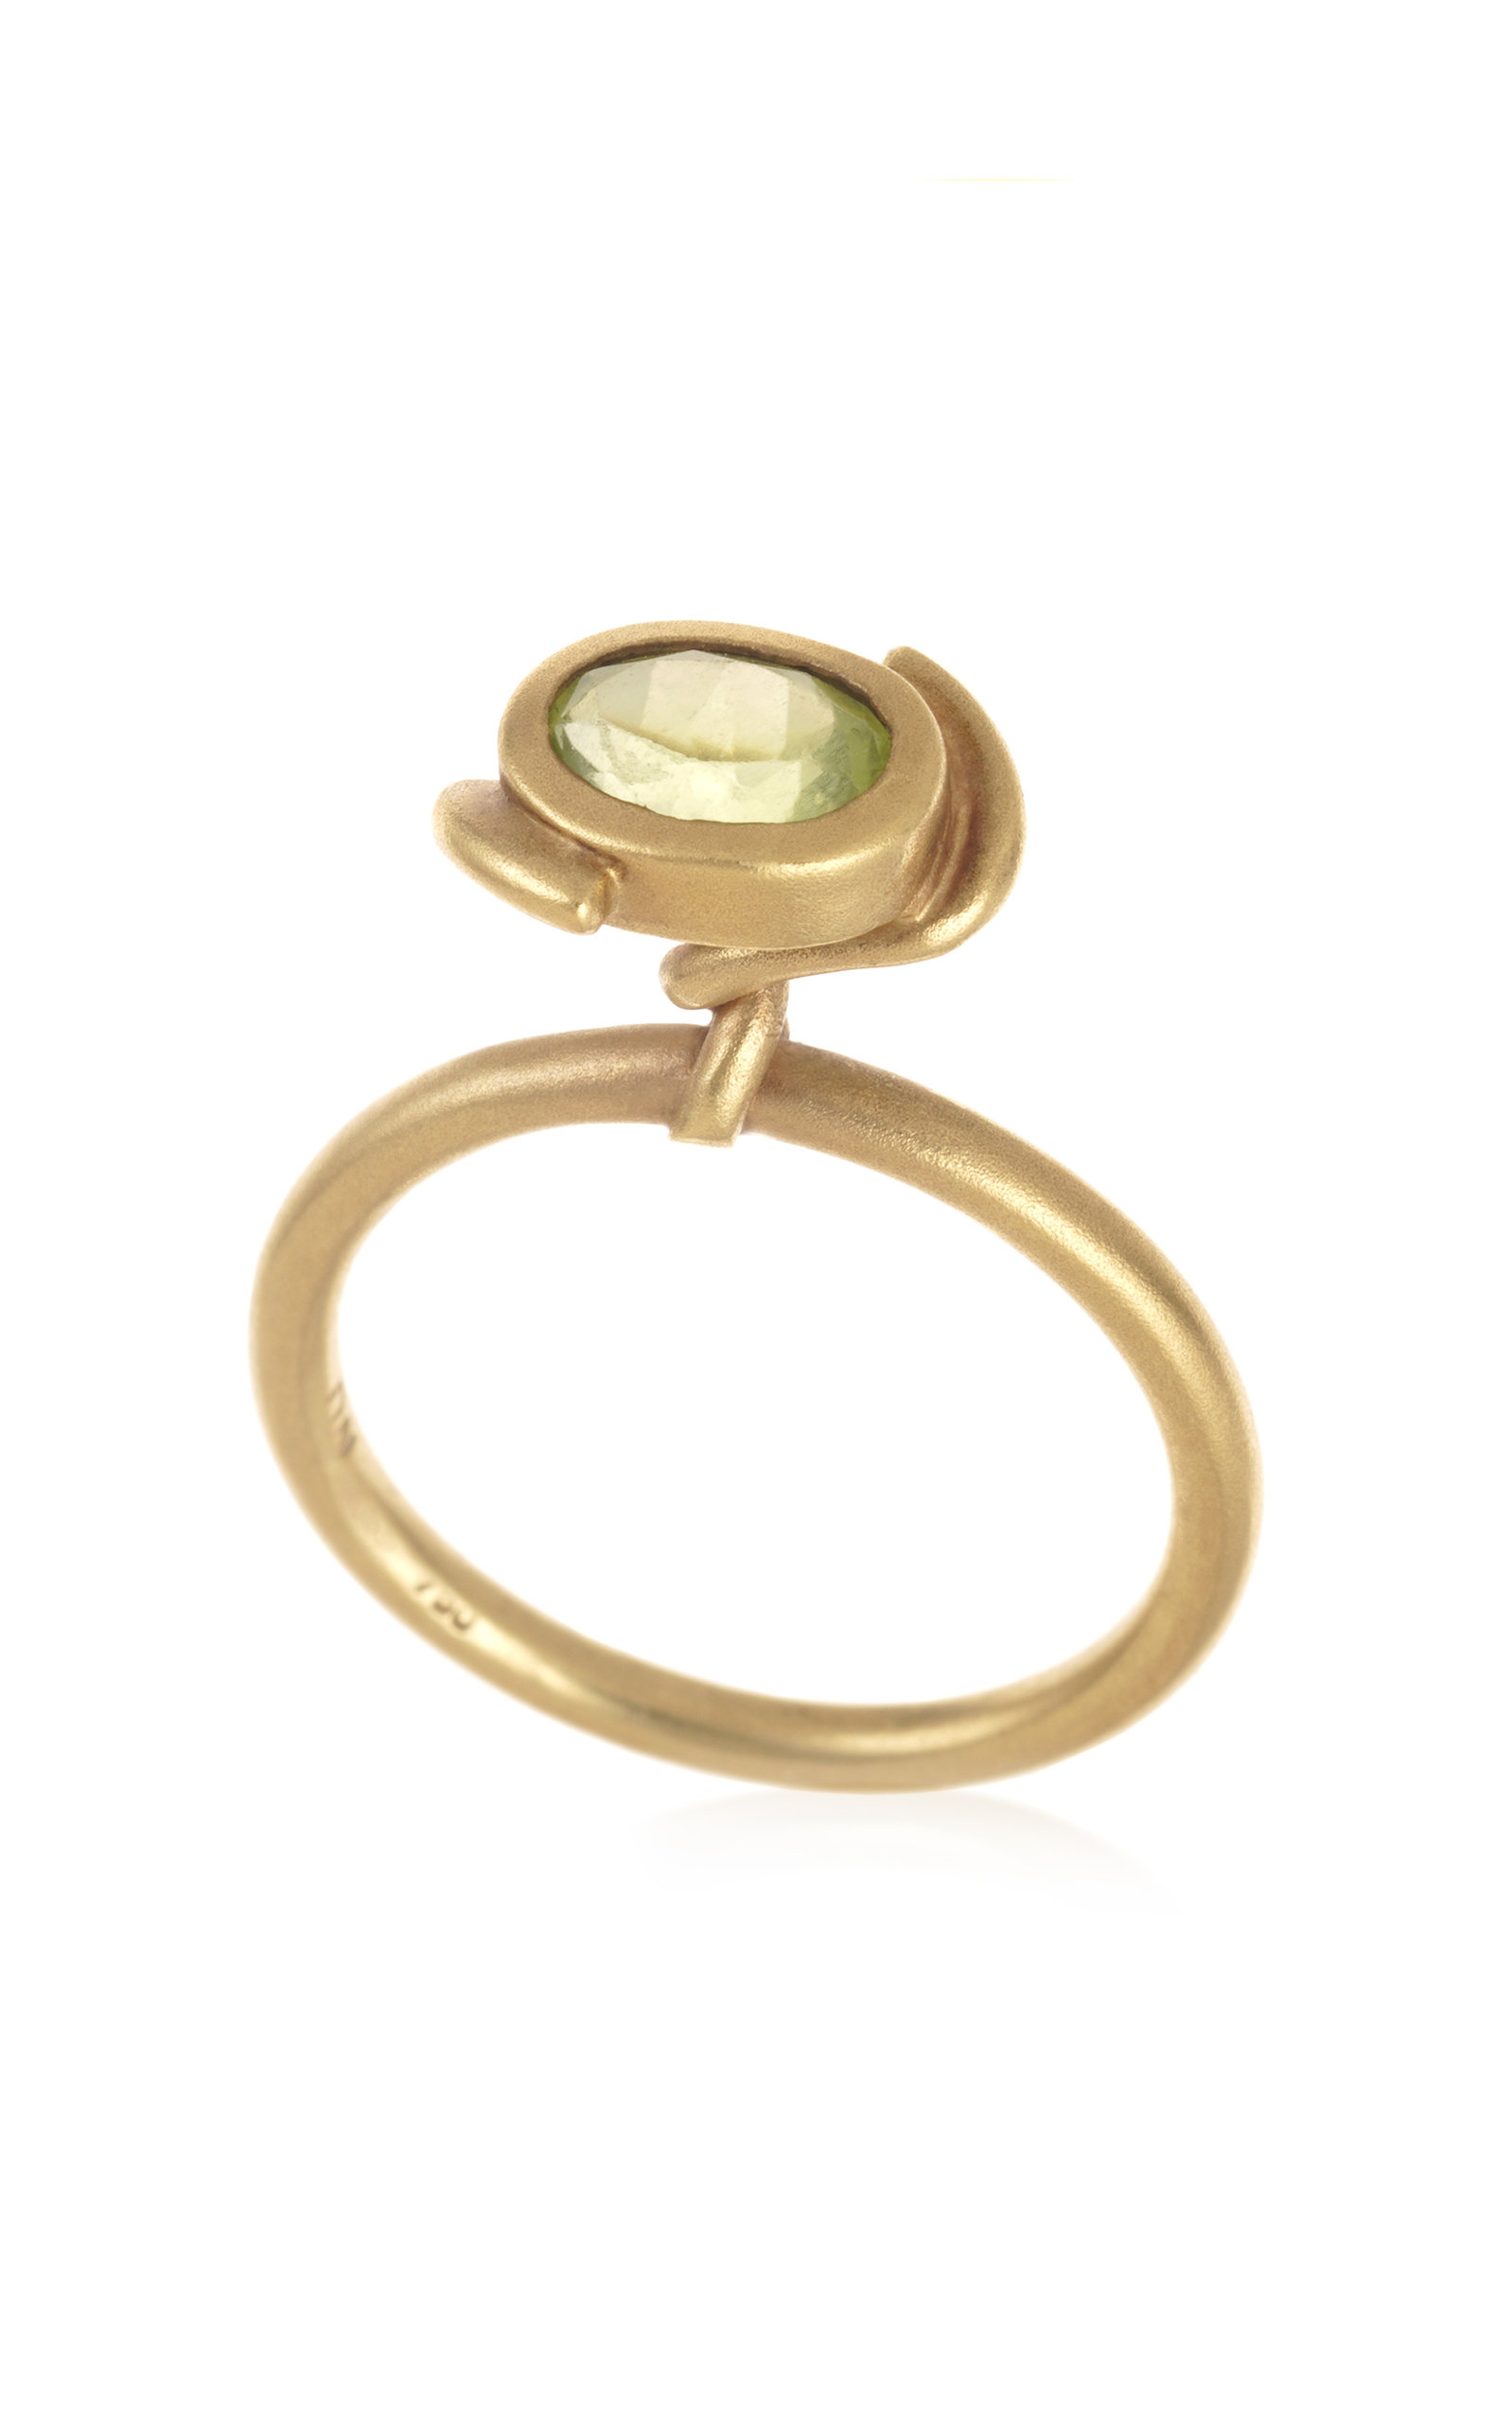 Dale Novick Women's 18K Yellow Gold Peridot Ring